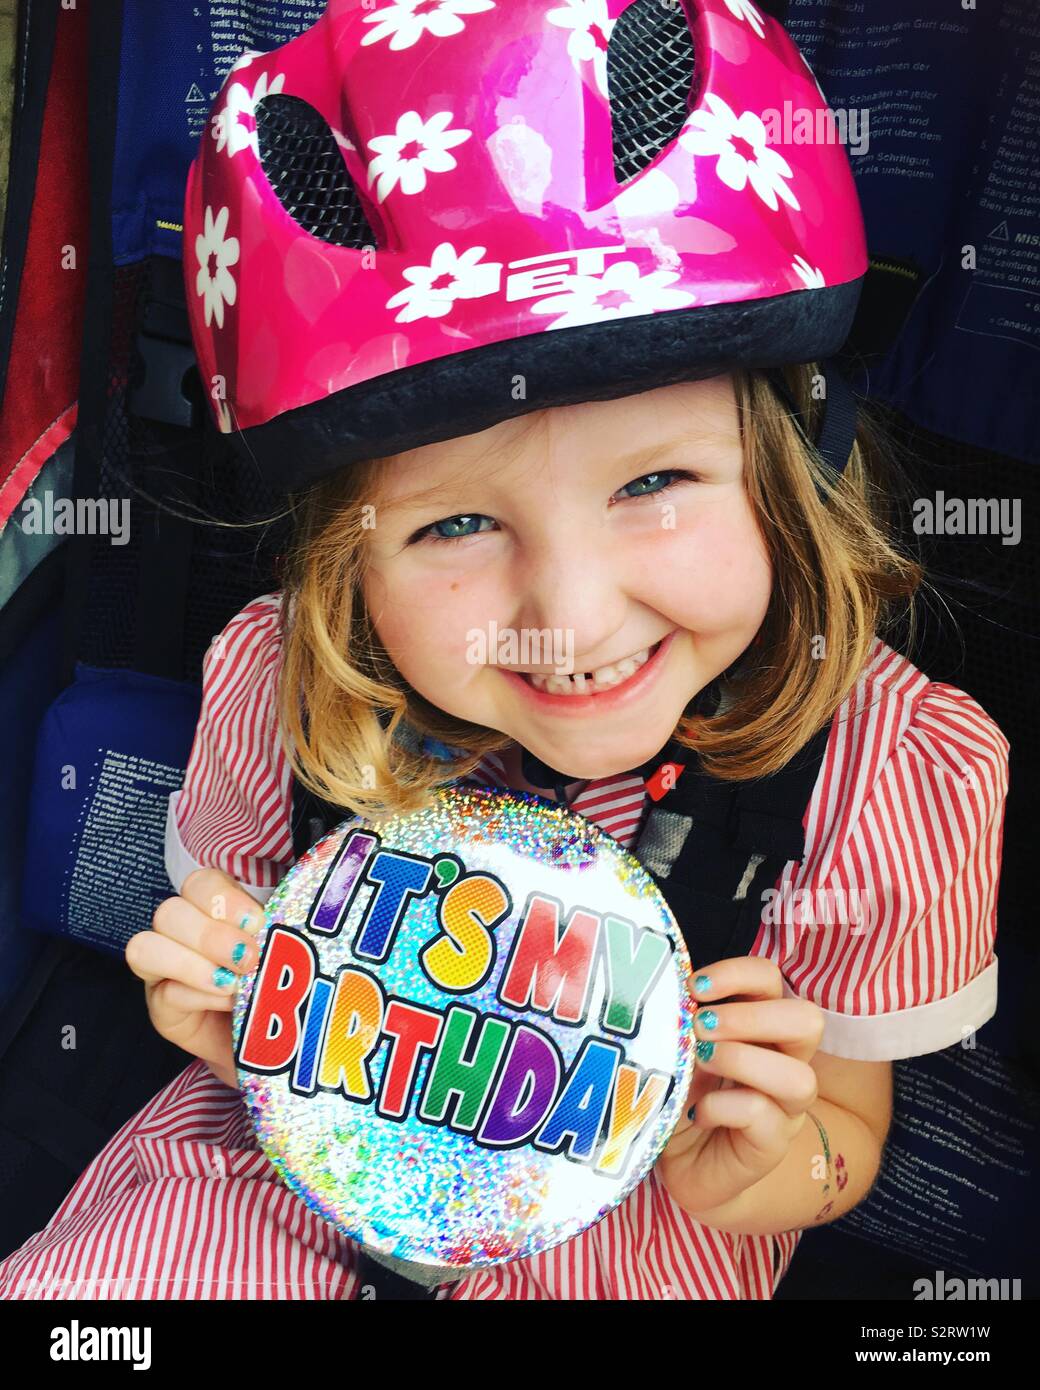 5-jähriges Mädchen mit einem Lächeln und das Tragen einer Übergröße/übergroße Happy Birthday Es ist mein Geburtstag Abzeichen/Große Große Abzeichen während der Sitzung in einer Fahrrad Anhänger und trägt einen Helm/Hut Stockfoto